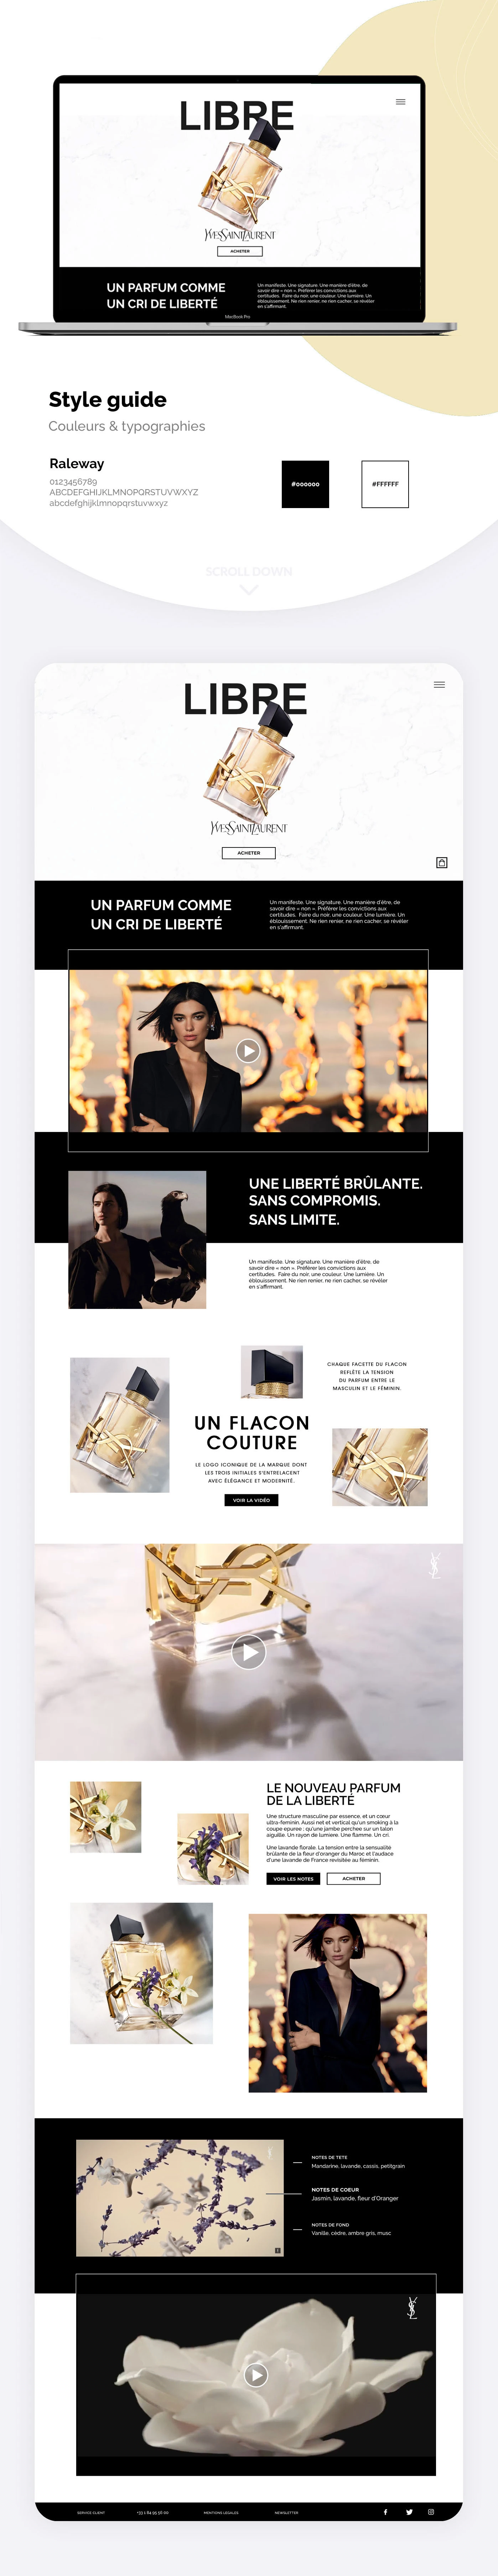 presentation du style guide du projet et capture d'écran du site web présentant le parfum.